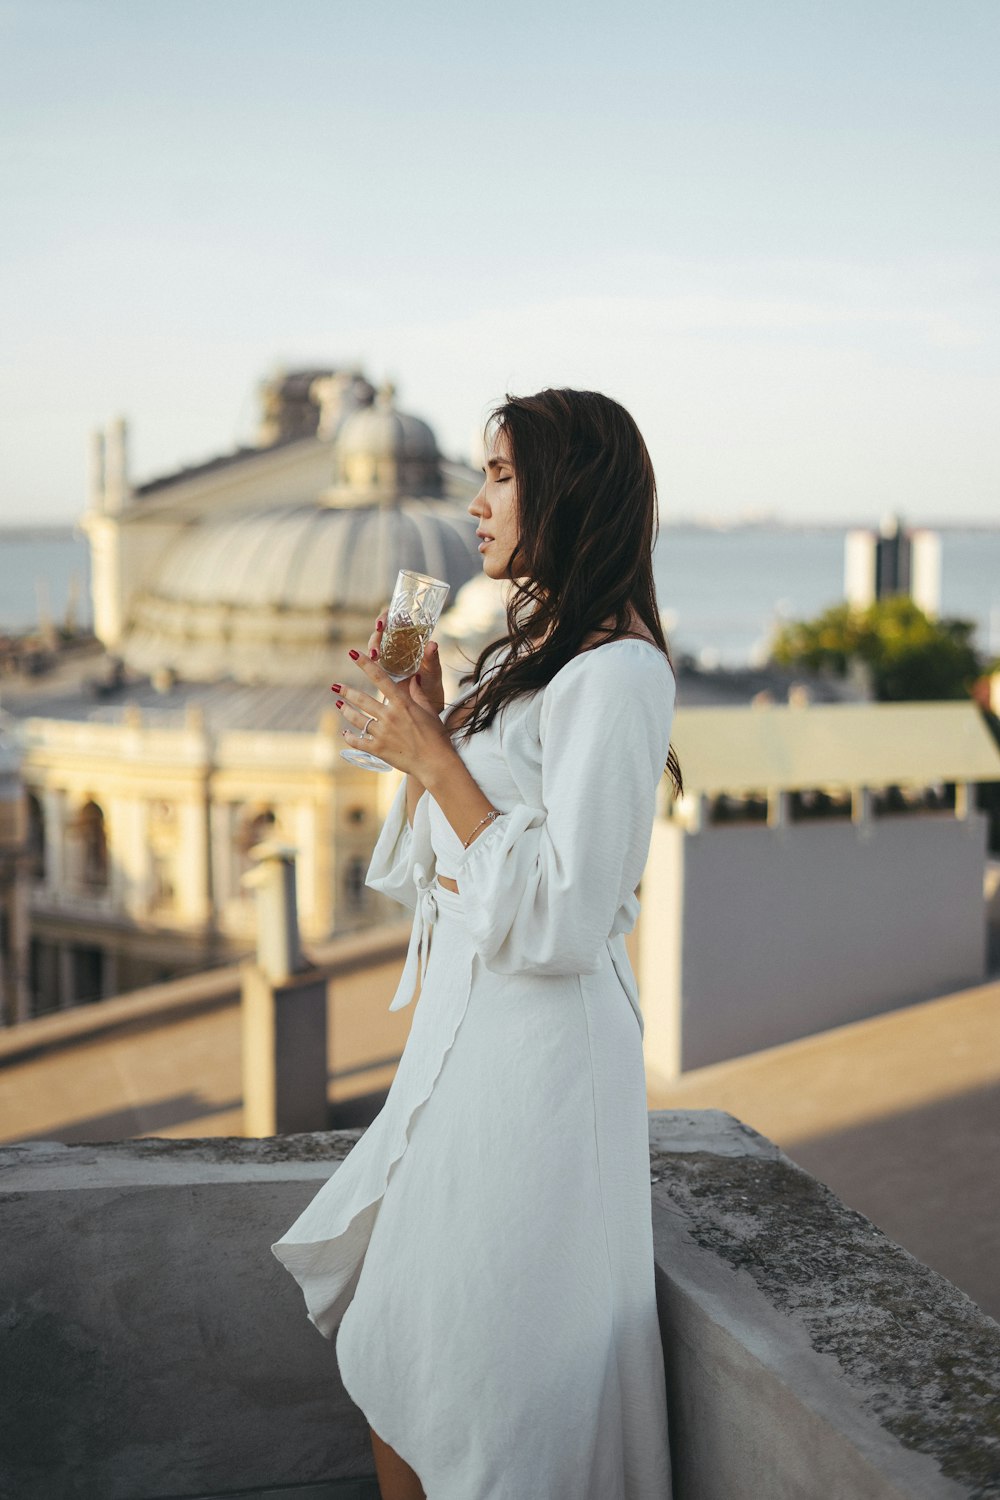 Eine Frau in einem weißen Kleid hält ein Glas Wein in der Hand